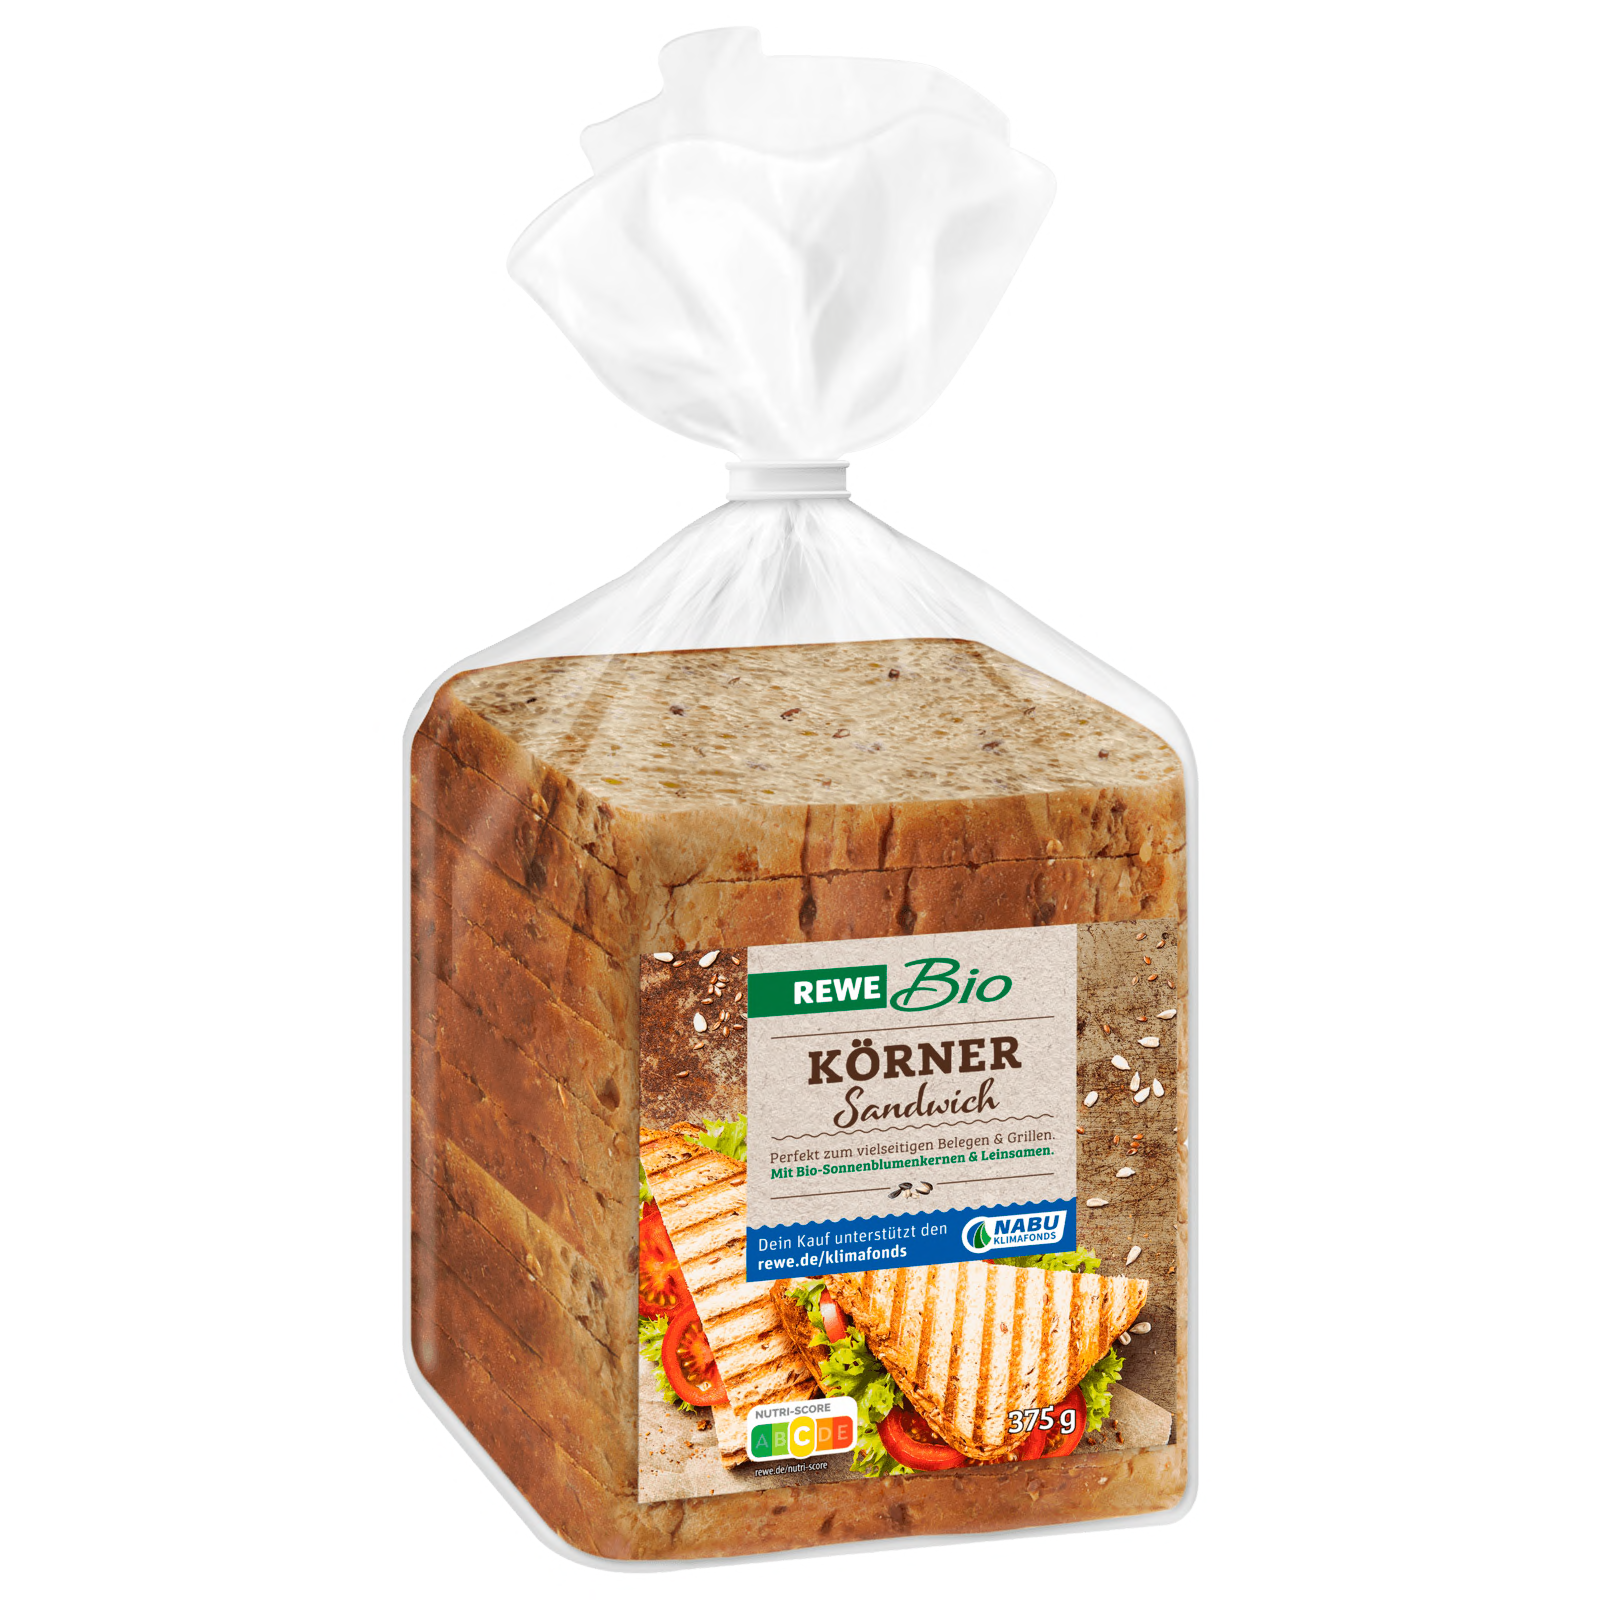 REWE Bio Körner-Sandwich 375g  für 2.49 EUR